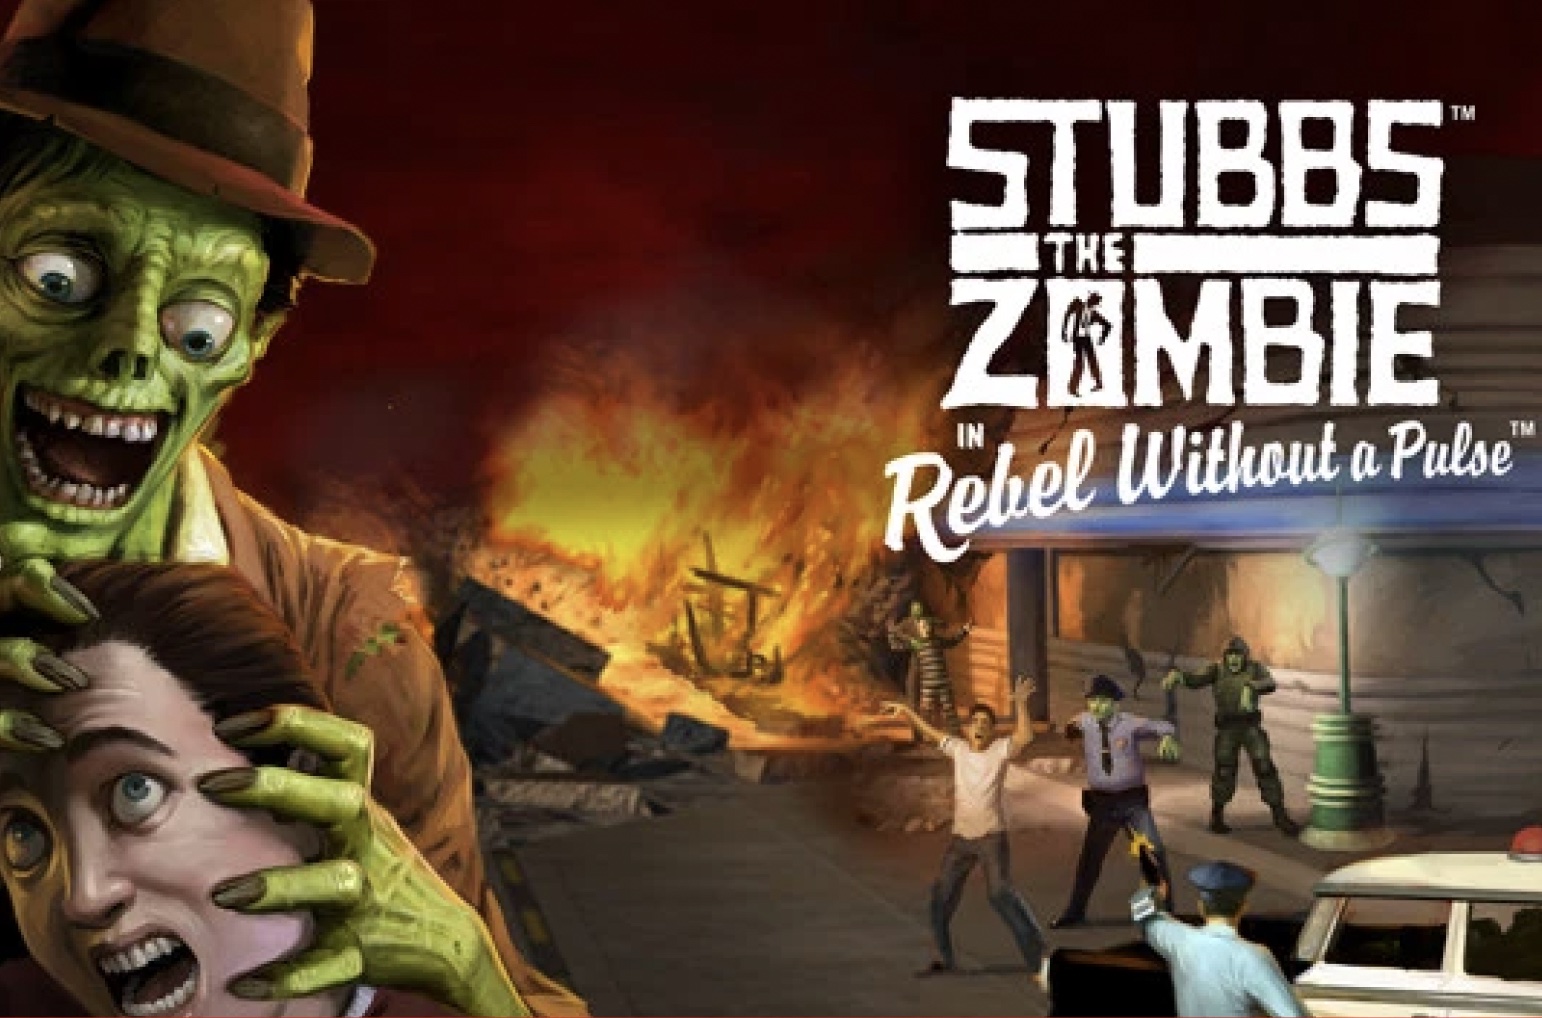 Tải game miễn phí Stubbs the Zombie, cho phép bạn hóa thân thành xác sống